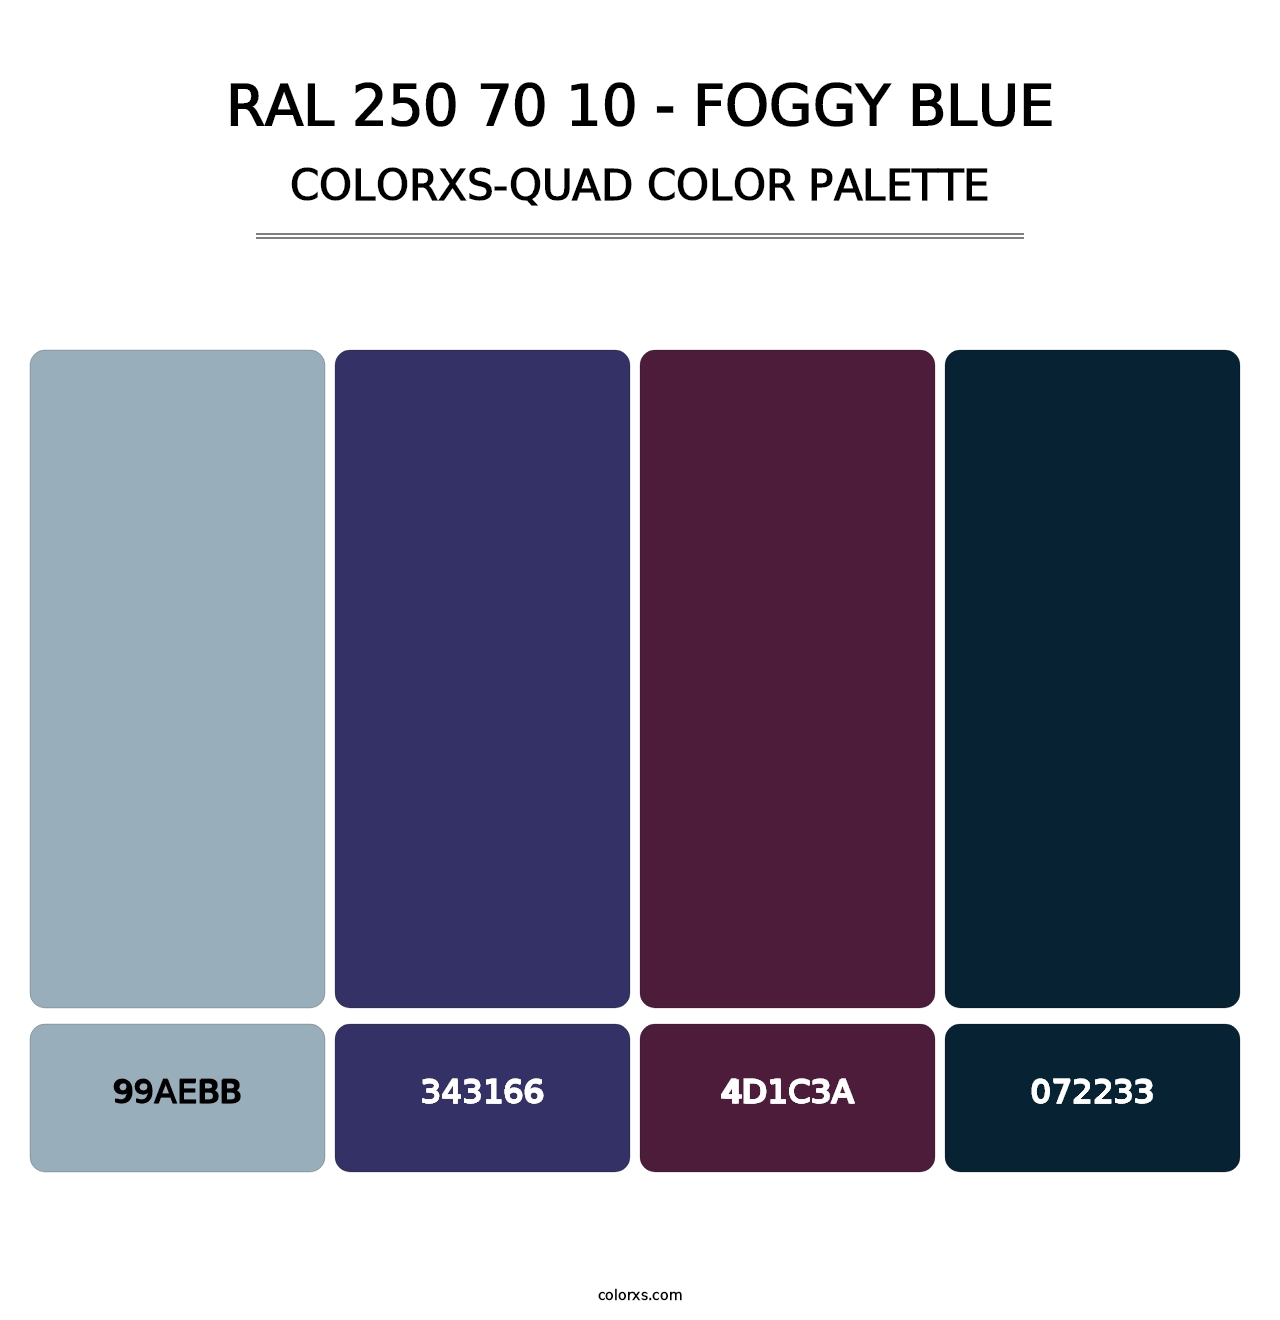 RAL 250 70 10 - Foggy Blue - Colorxs Quad Palette